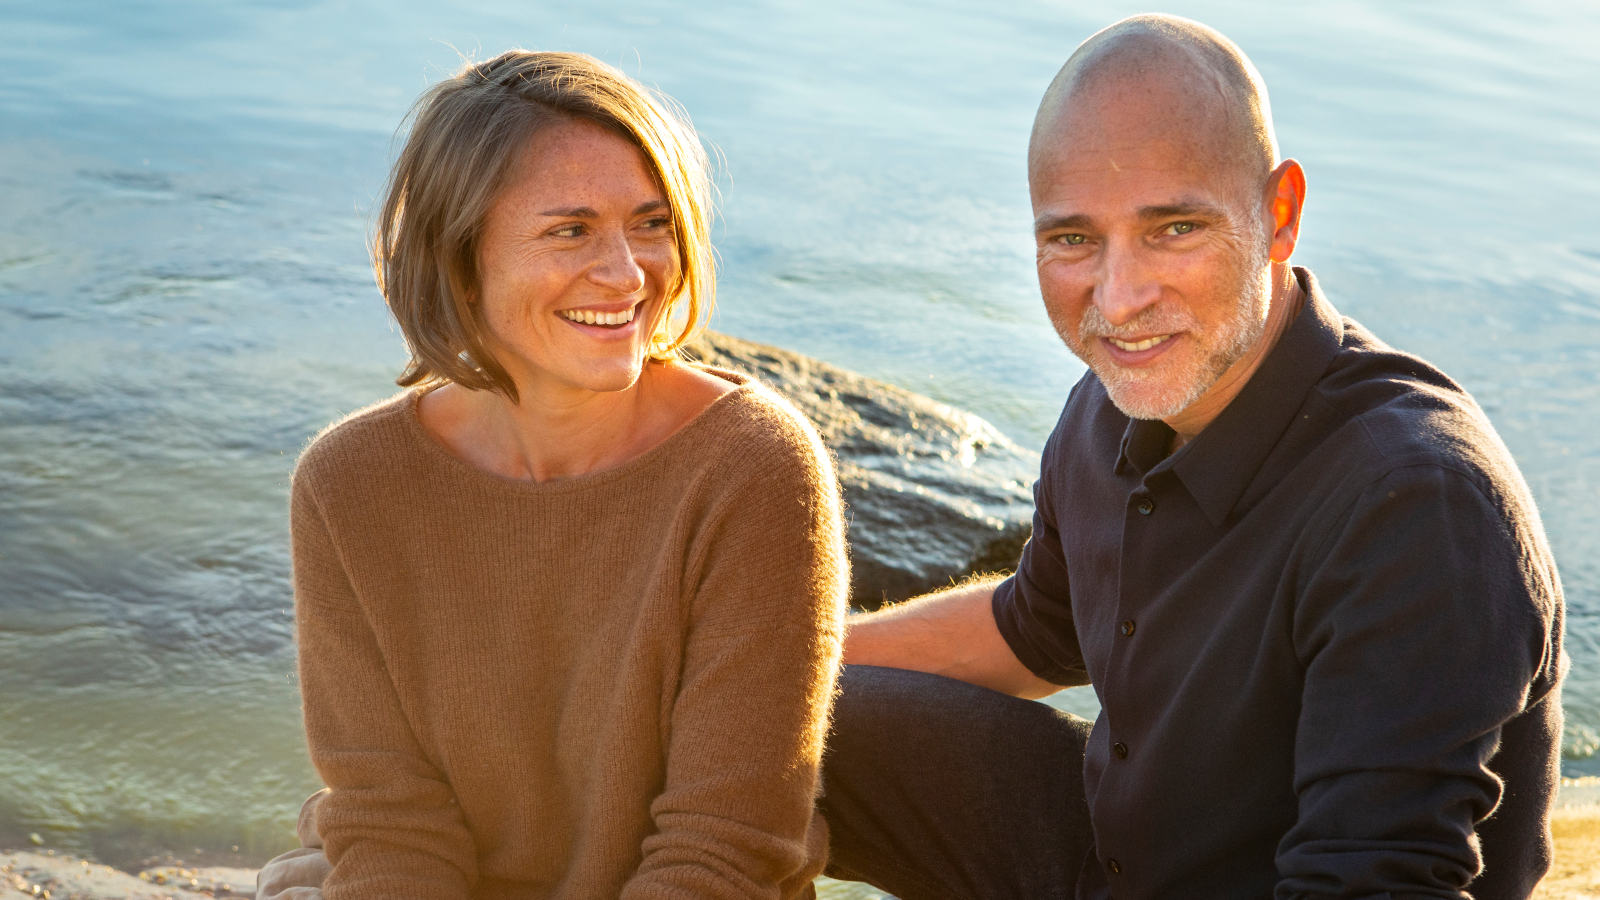 Kuvassa ovat Inka Kallen ja Aki Louhimies istumassa auringoisella ilmalla rantakalliolla meren rannalla.